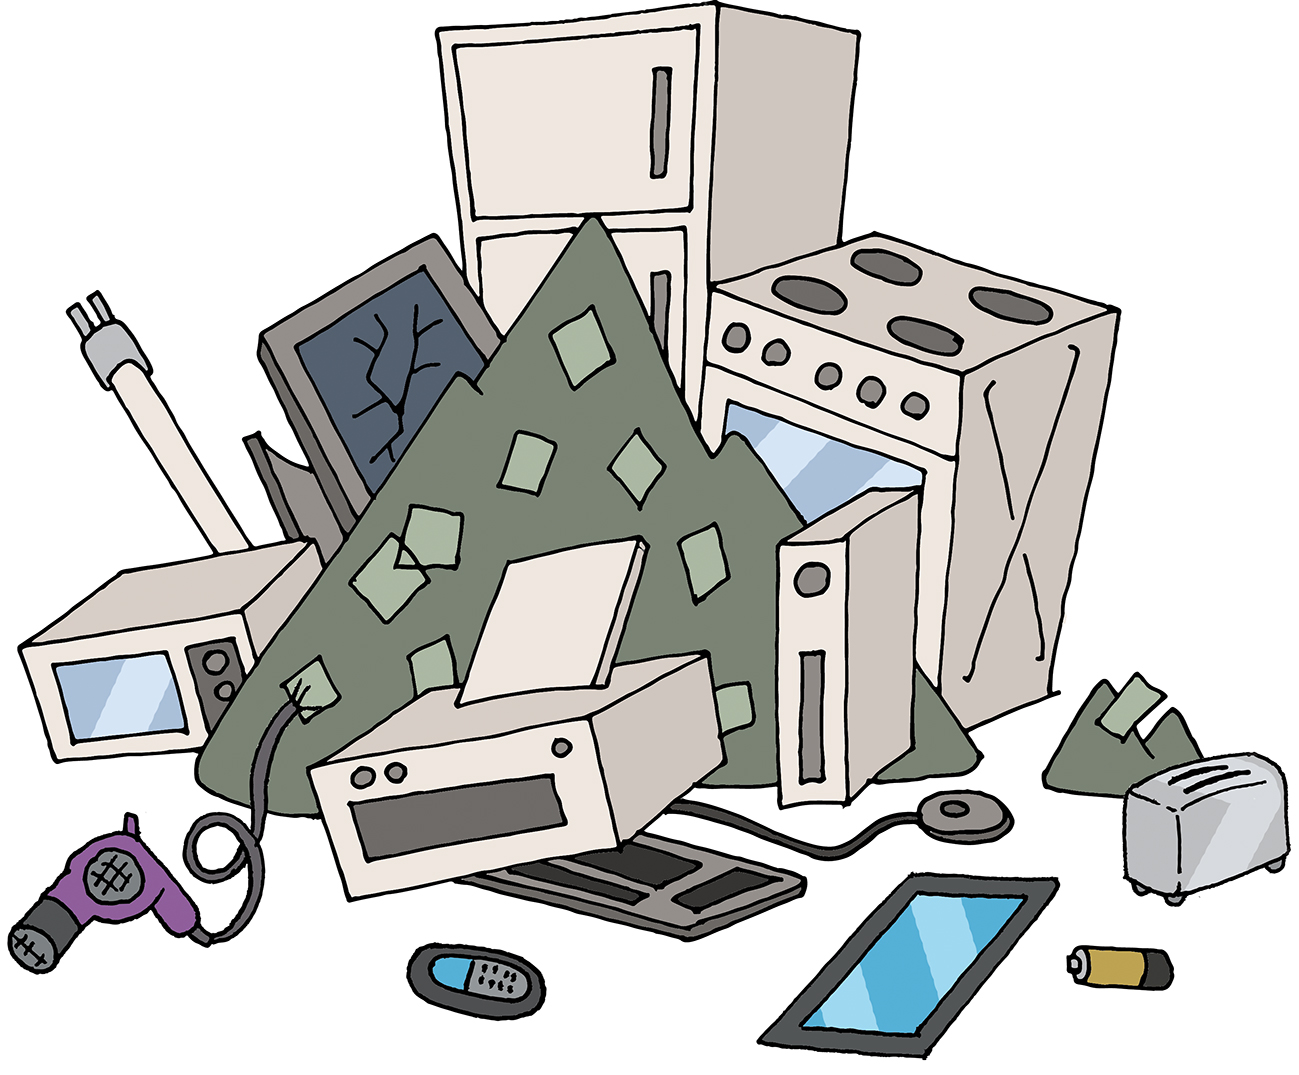 Odbačeni IKT i kućanski uređaji koji čine EE otpad. Tako možemo vidjeti: hladnjak, štednjak, toster, mikrovalnu pećnicu, sušilo za kosu, monitor oštećenog zaslona, kućište, tablet, bateriju, tipkovnicu, miš, pisač i mobitel.